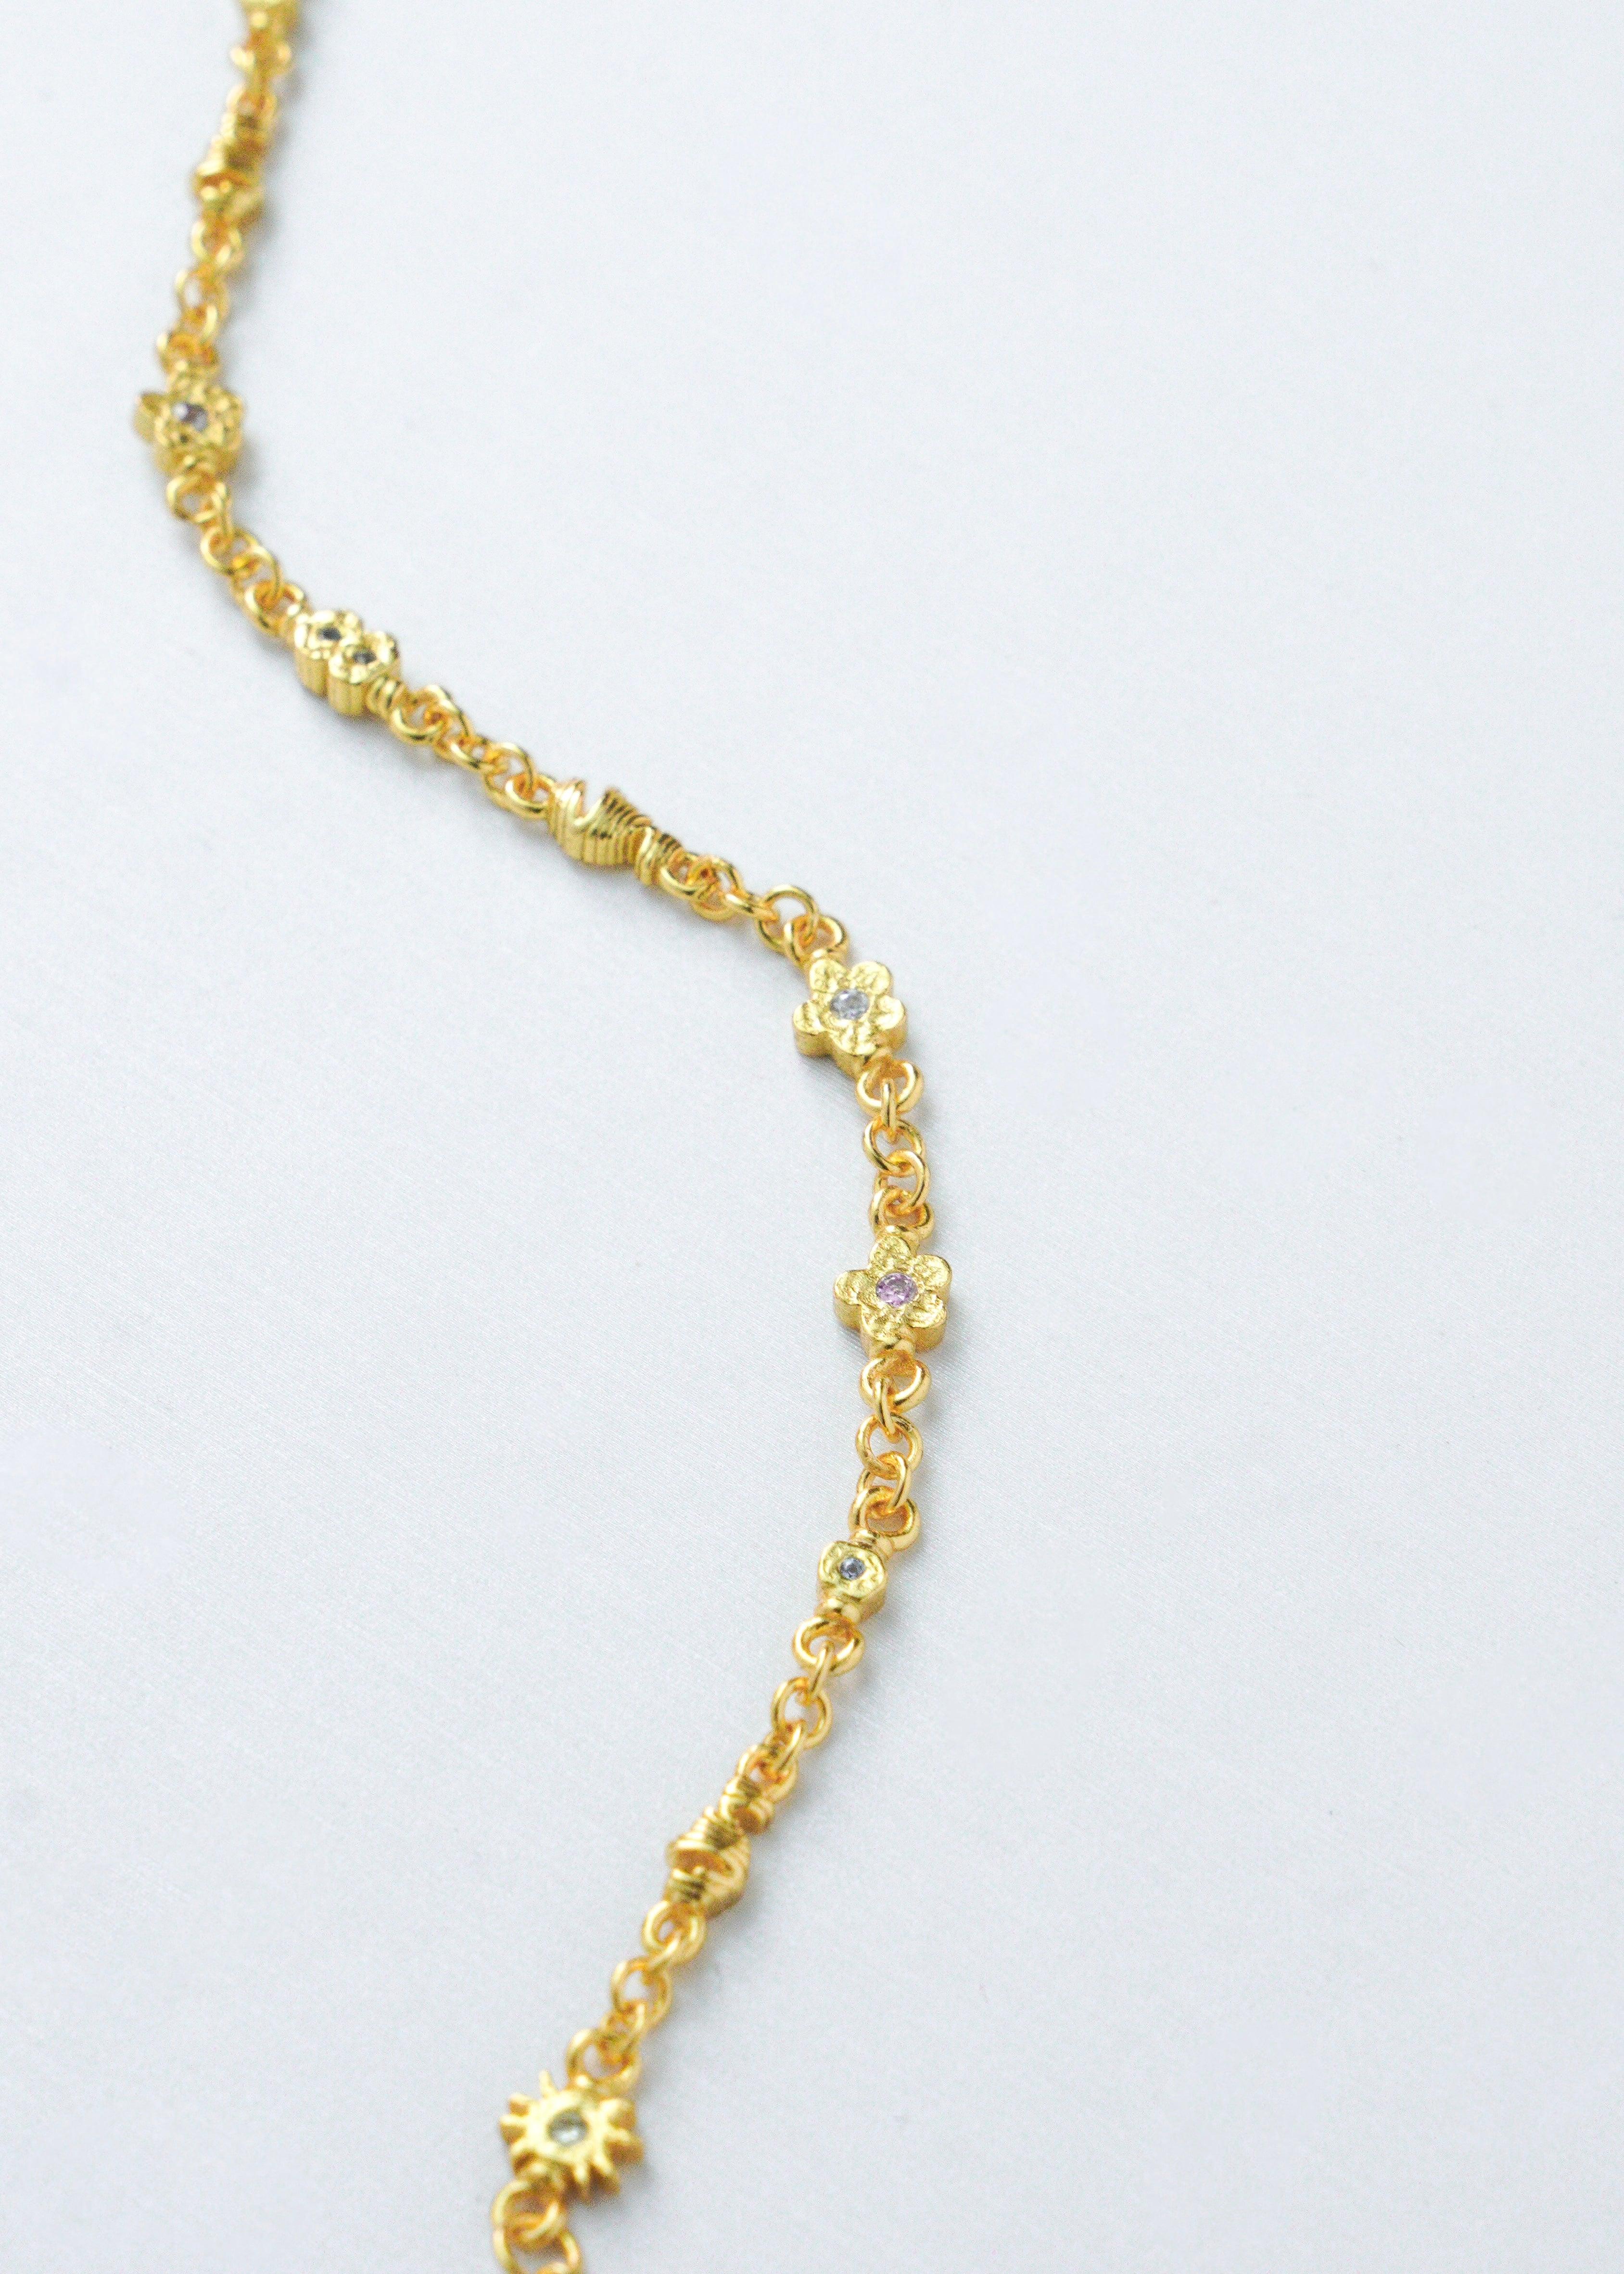 Et delikat gullarmbånd plassert på en hvit bakgrunn.